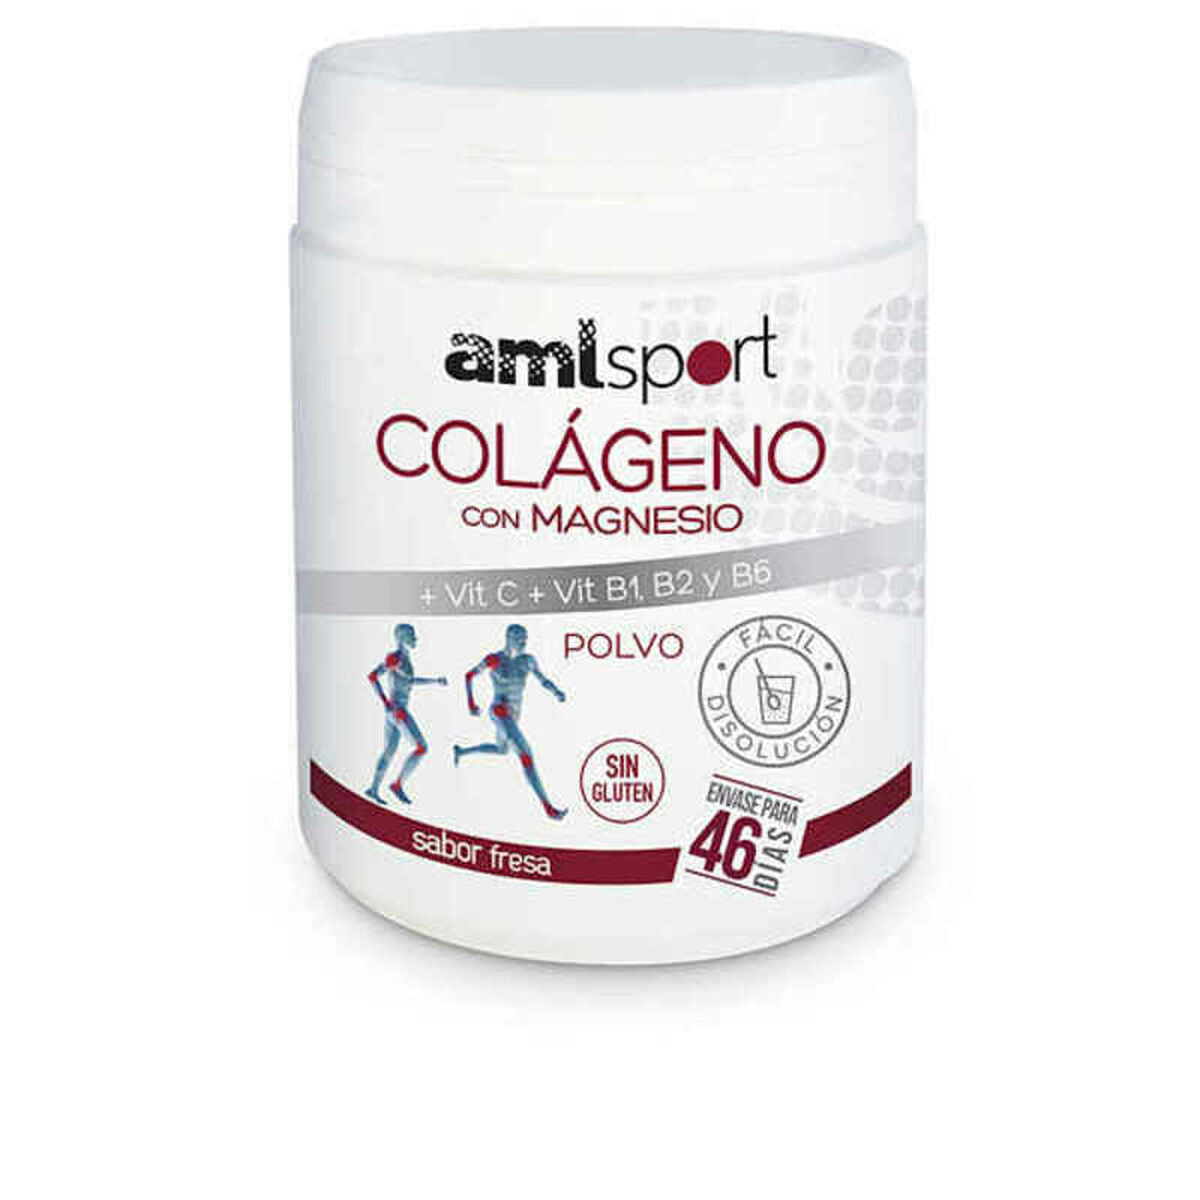 Collagen Amlsport Colágeno Con Magnesio C Collagen Magnesium Vitamin C Dust (350 g)